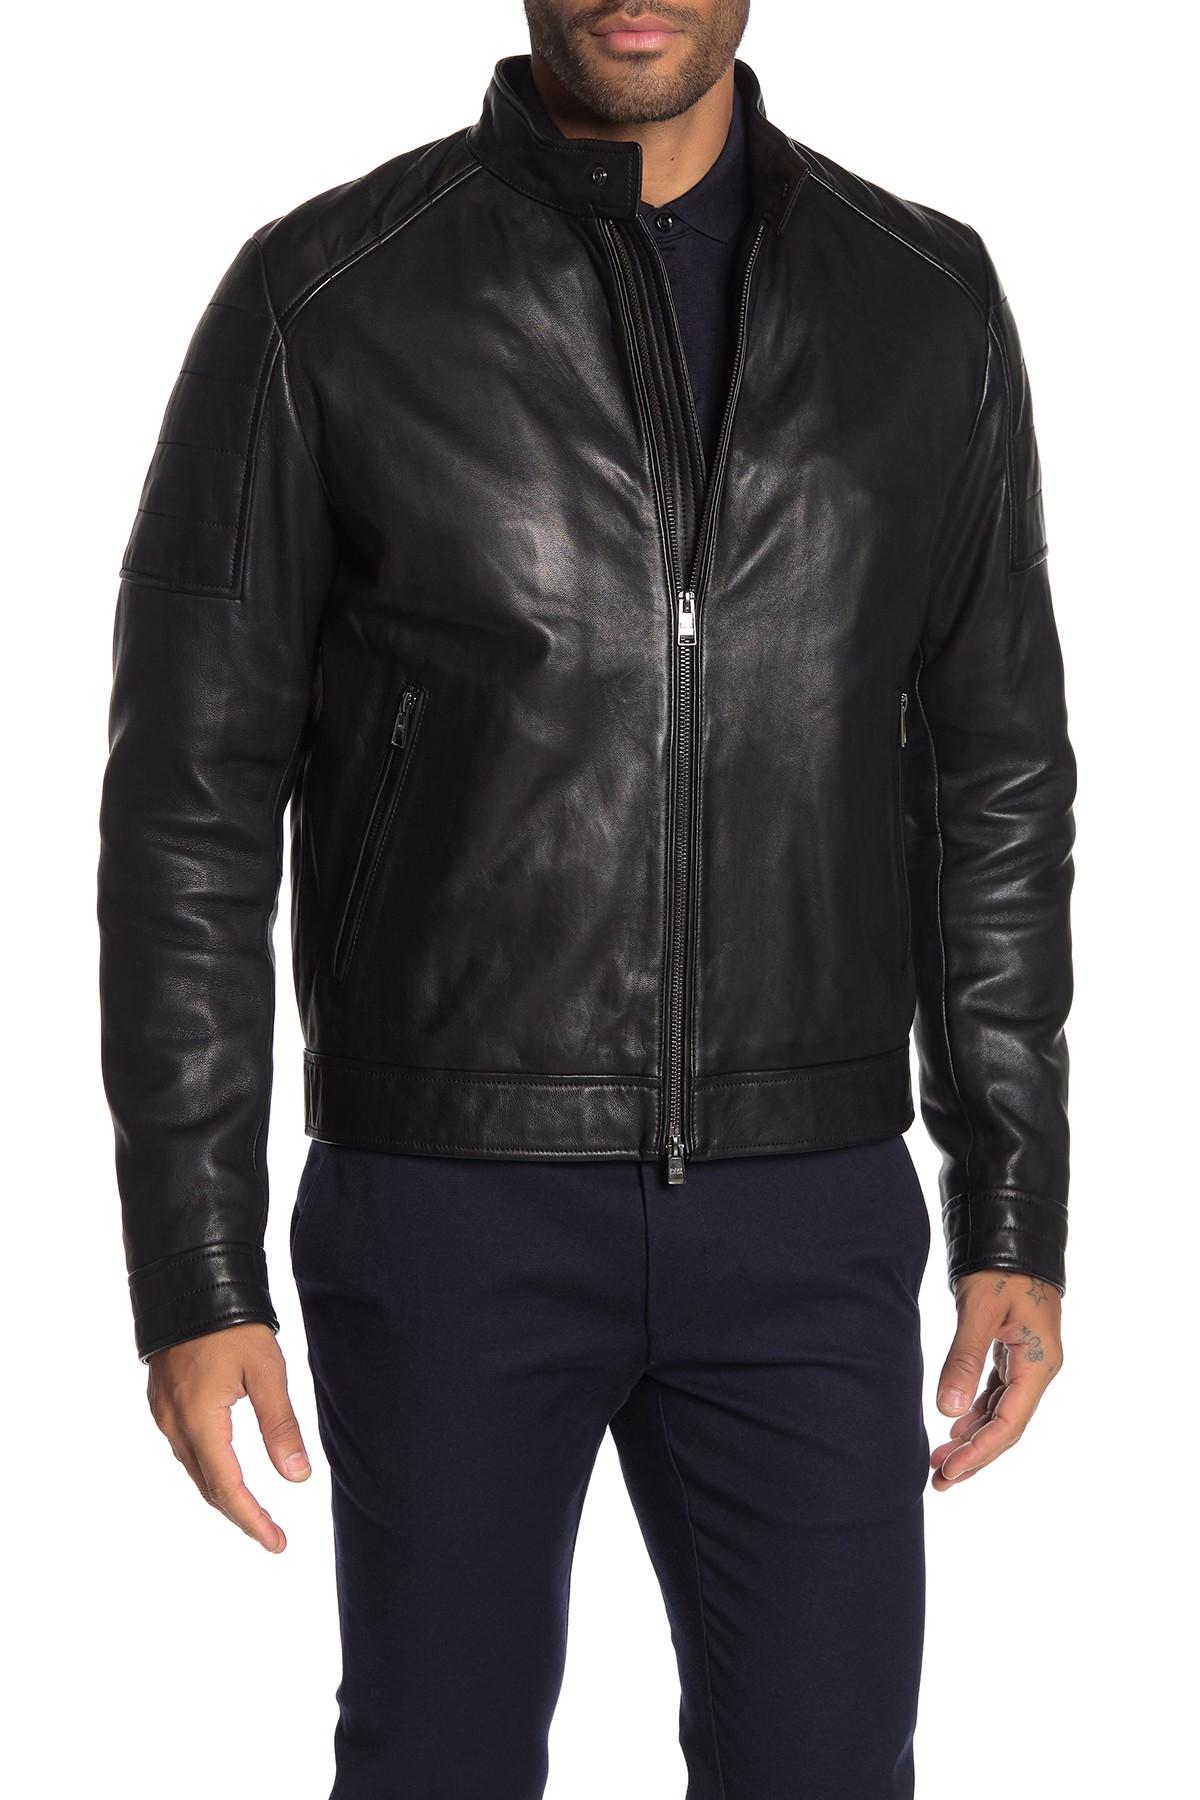 BOSS Getani Sheepskin Leather Moto Jacket in Black for Men - Lyst